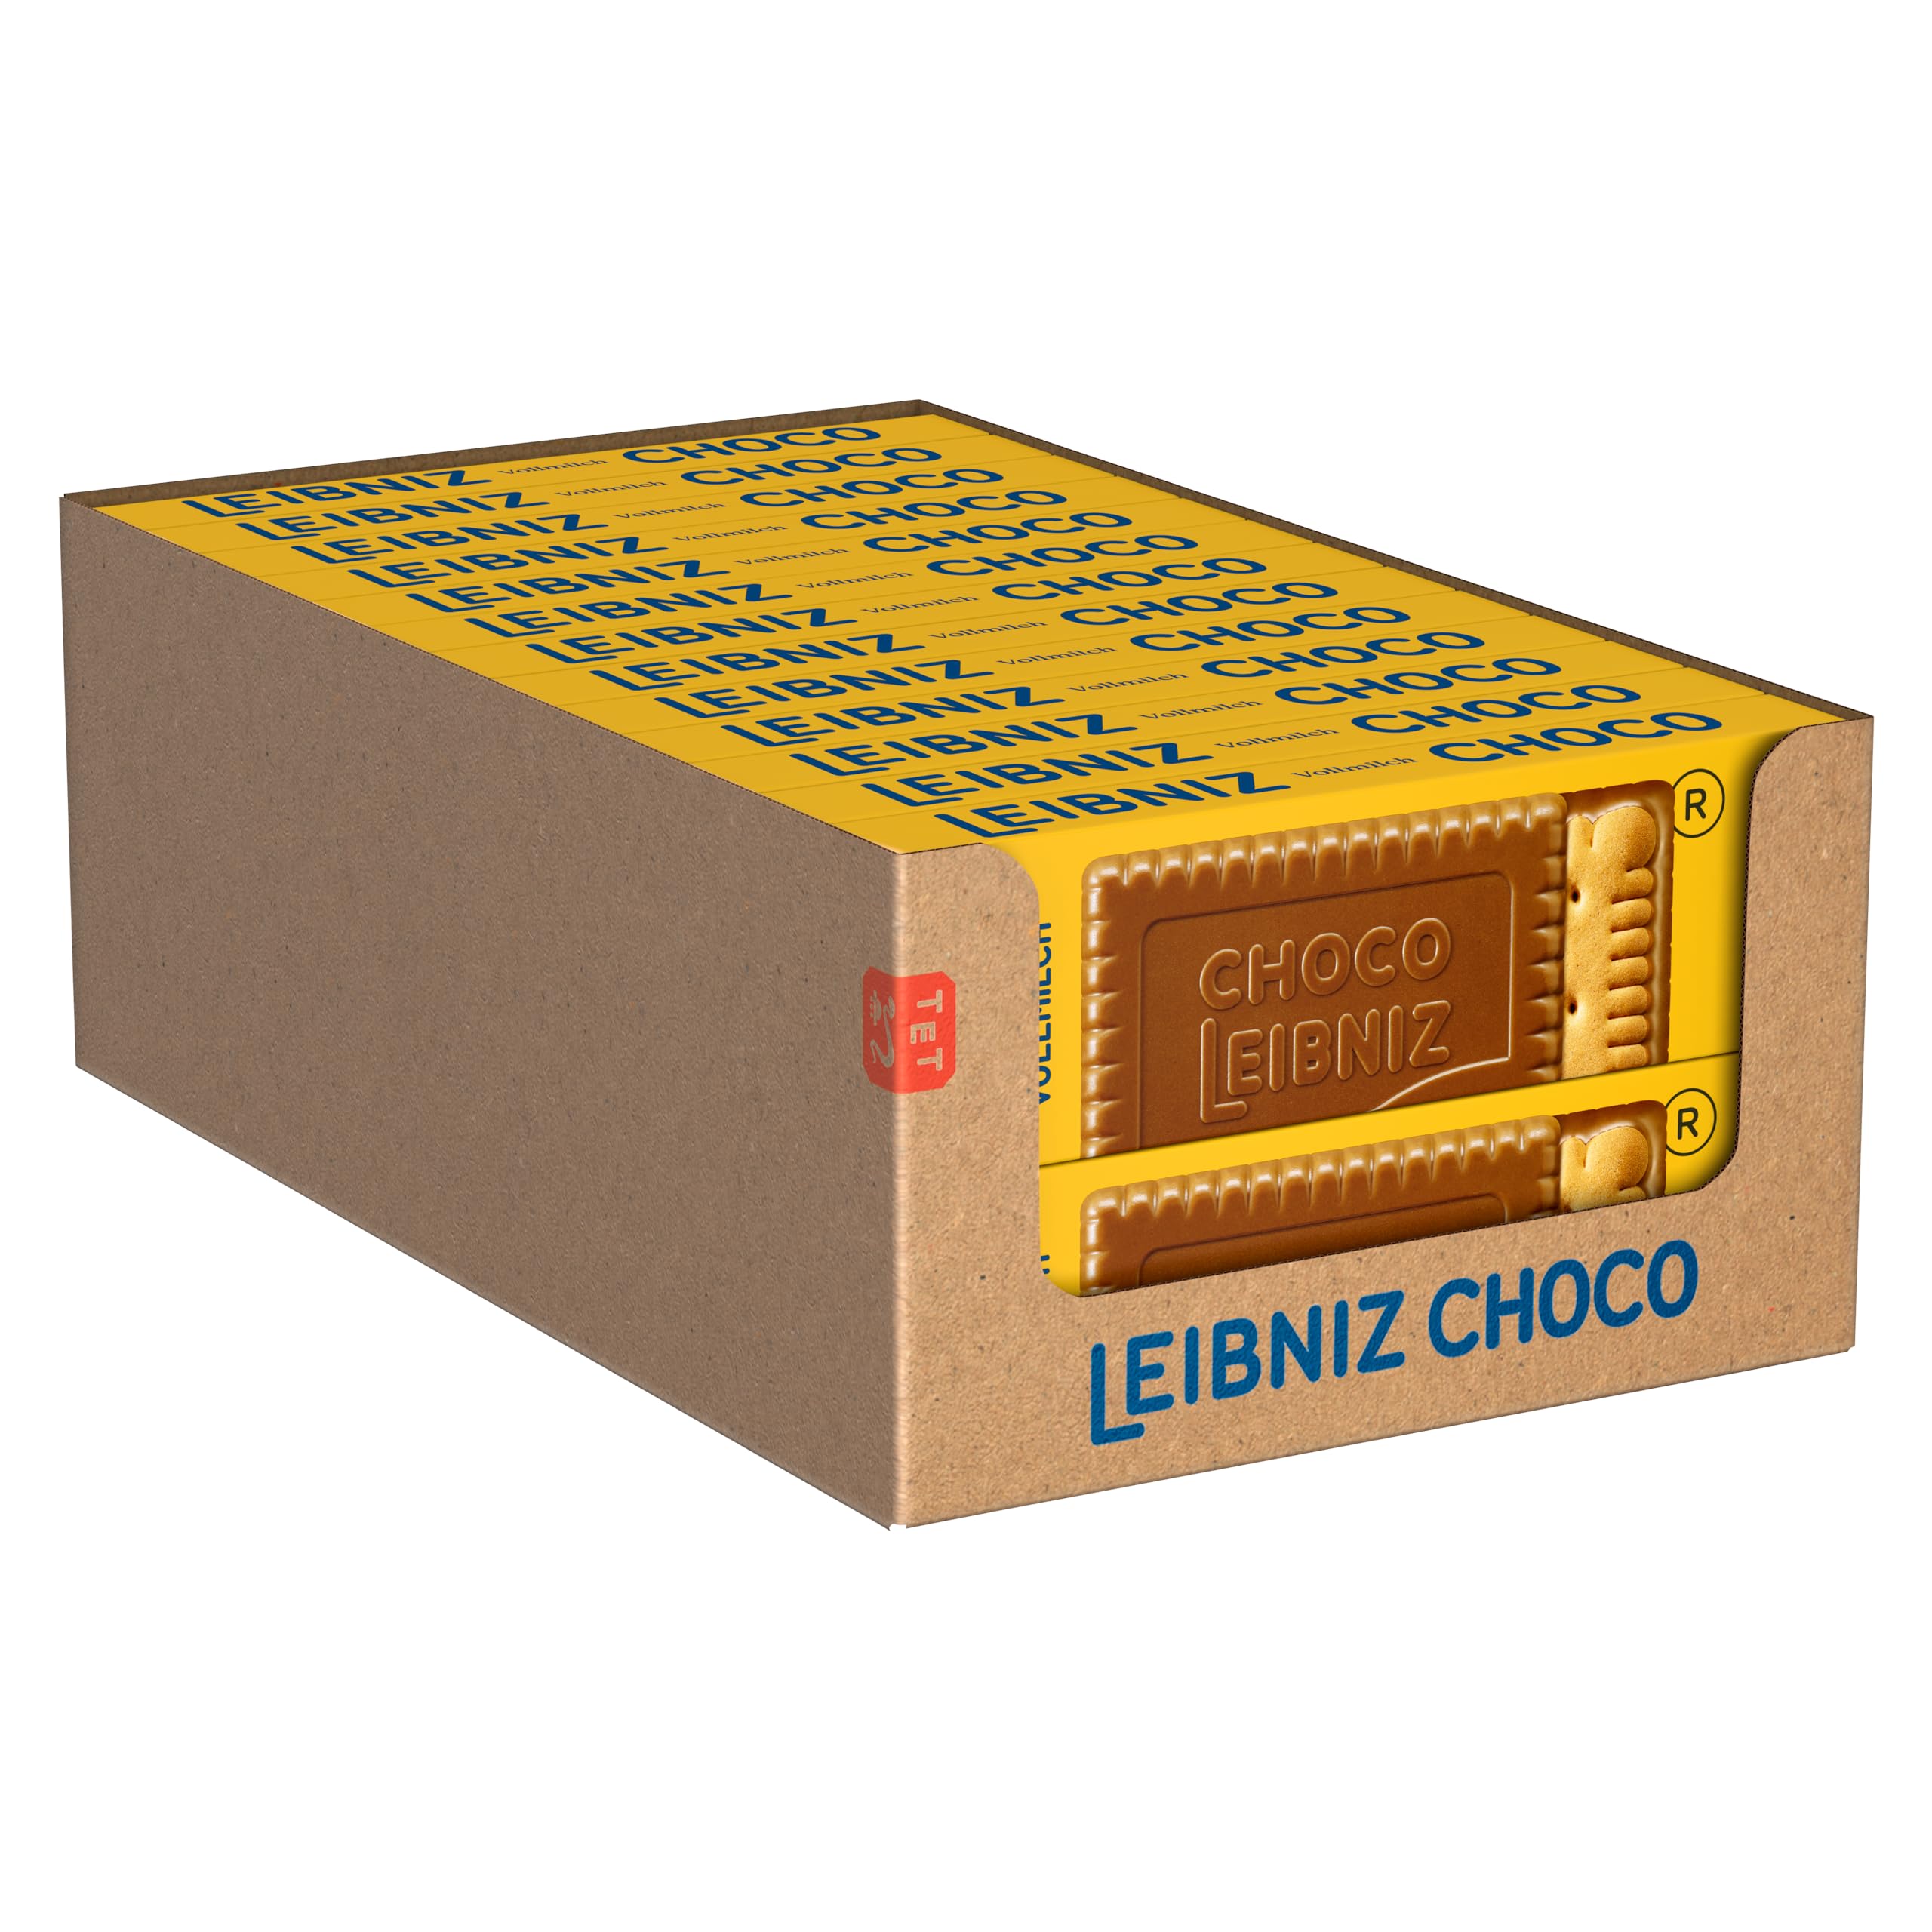 LEIBNIZ Choco Vollmilch, 26er Pack, knusprige Butterkekse eingebettet in zarte Milchschokolade, Großpackung als Vorrat oder zum Verkauf (26 x 125 g)